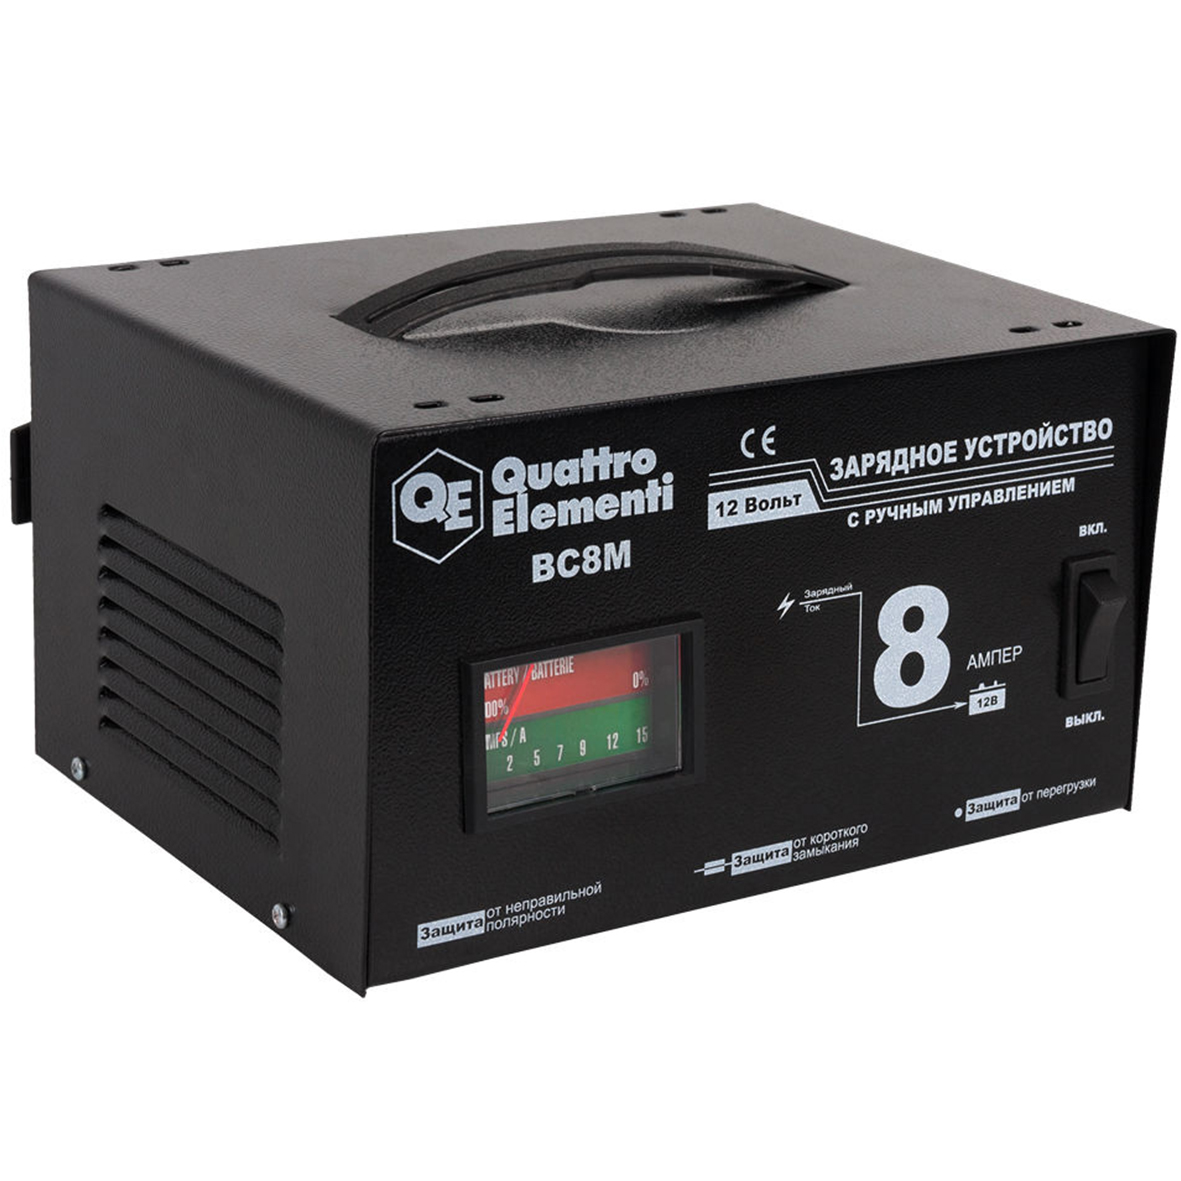 Зарядное устройство BC 8M Quattro Elementi  770-087_0